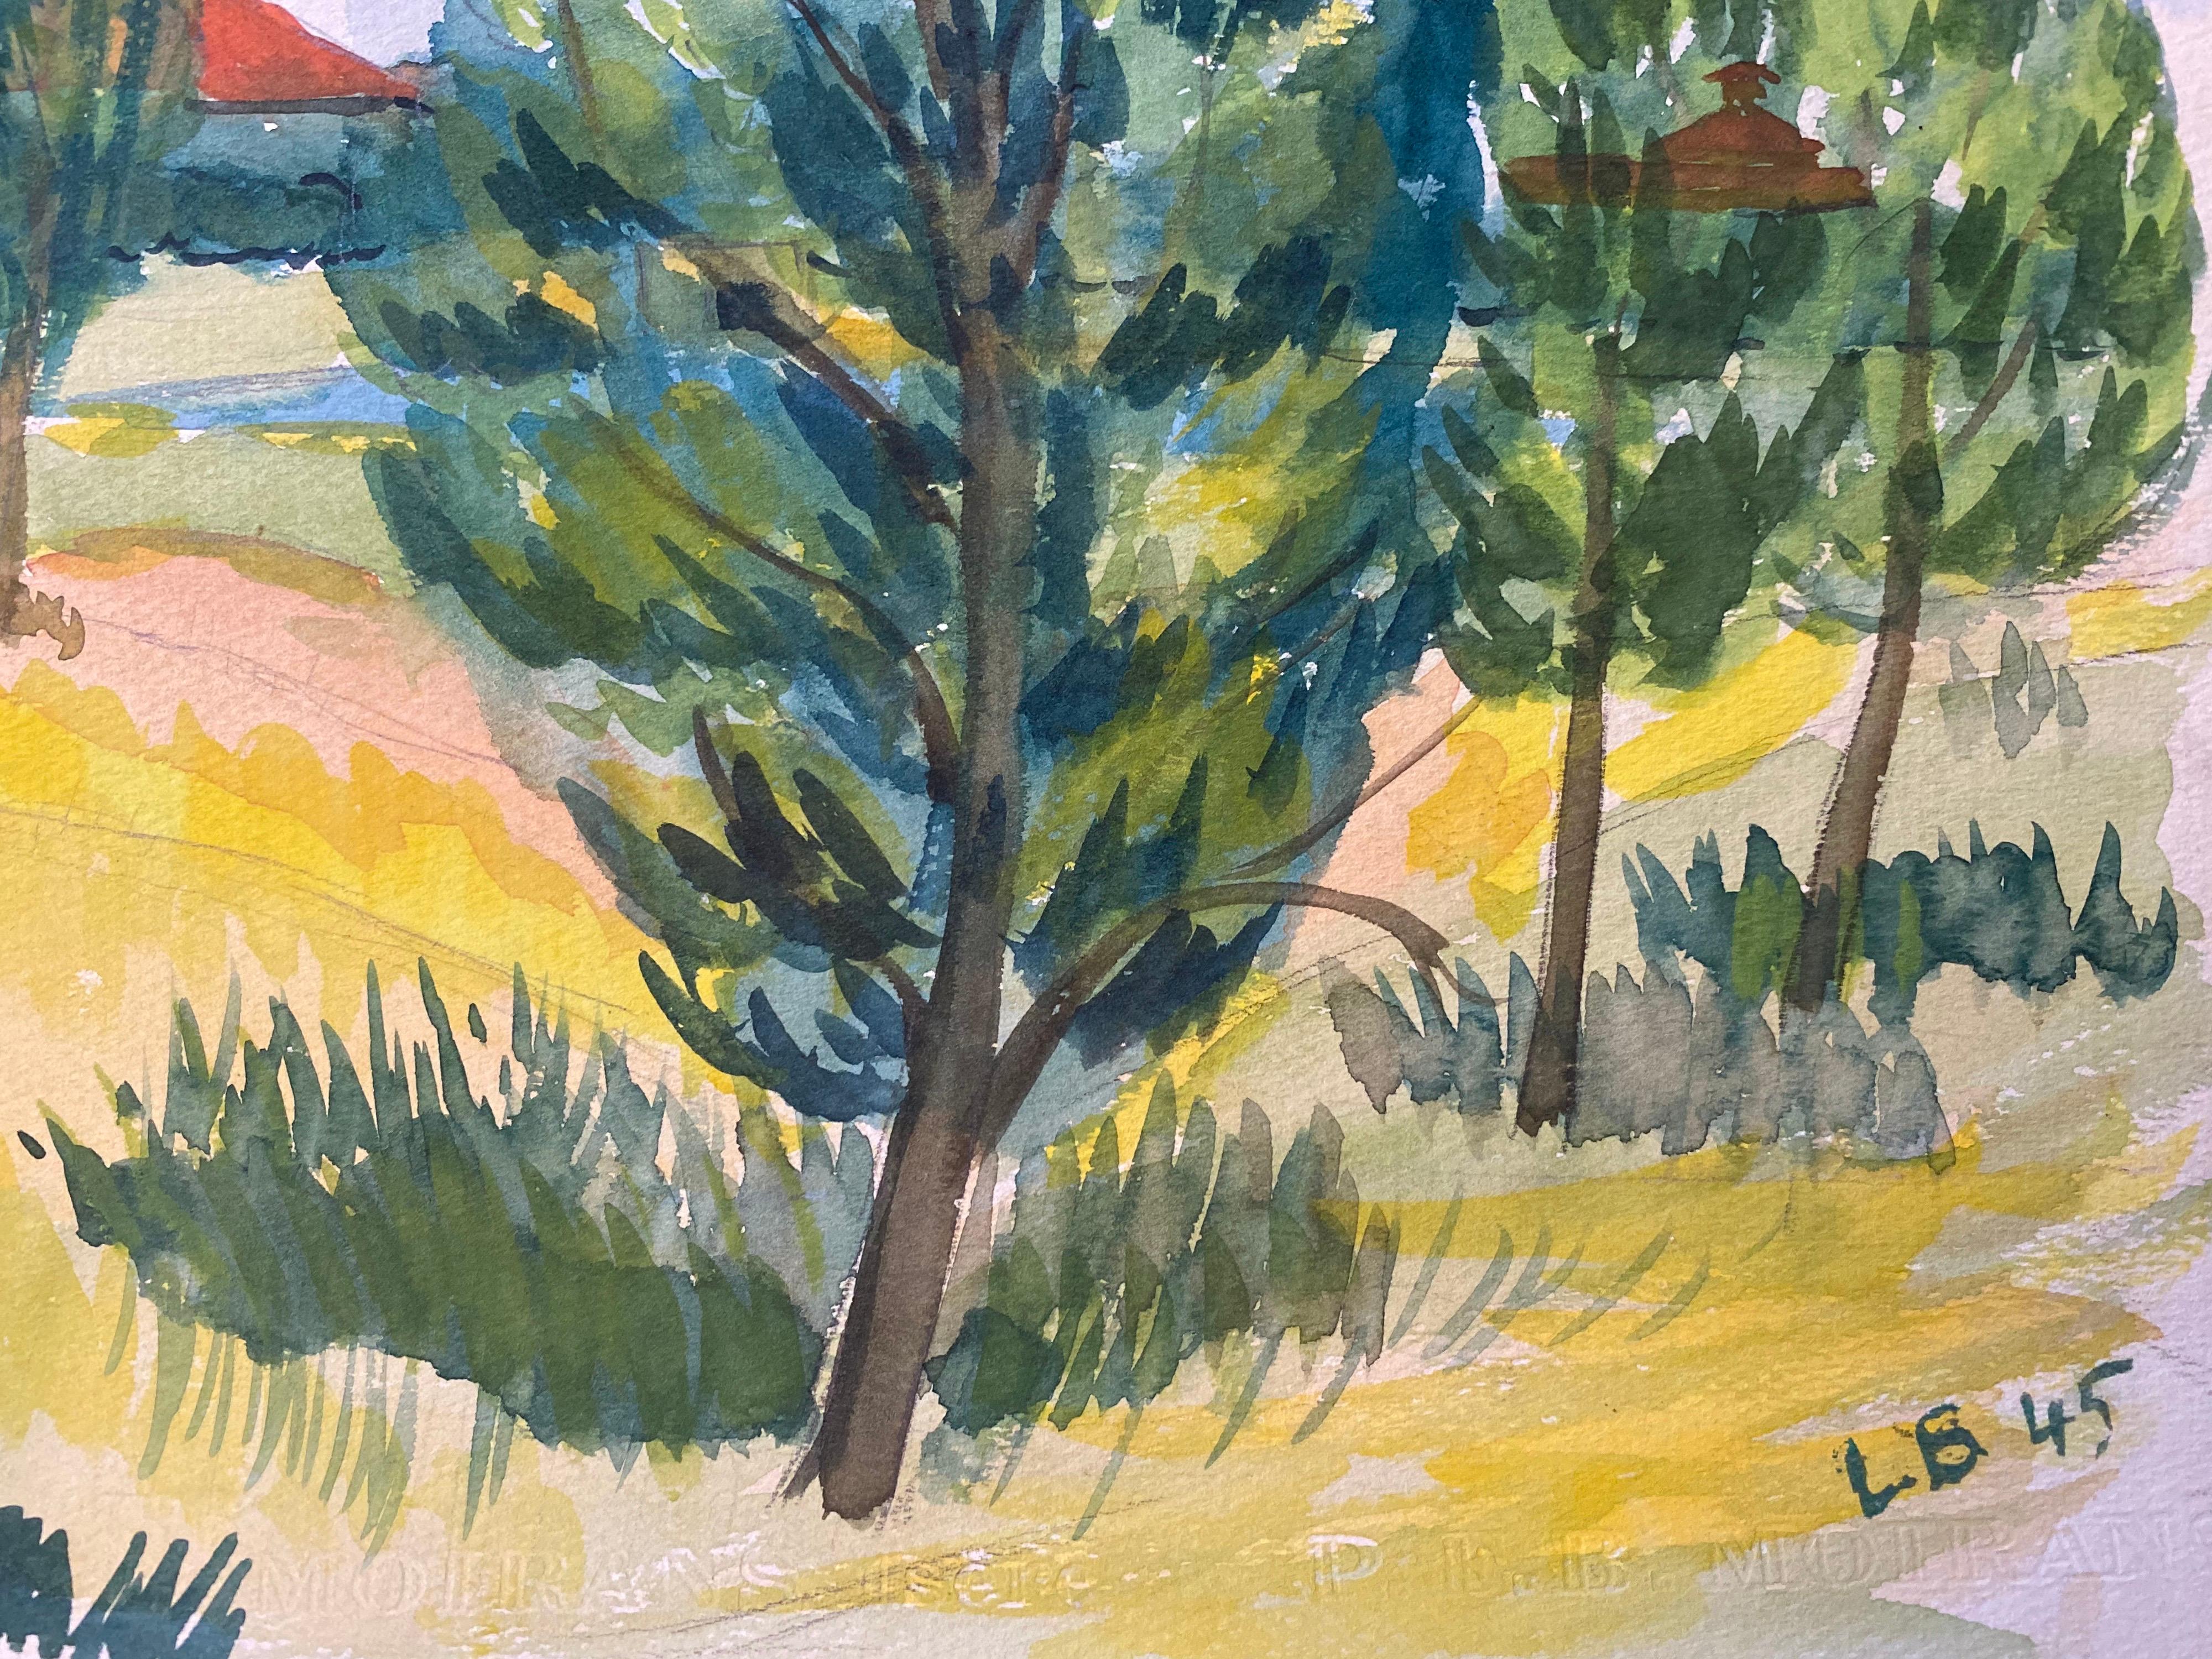 1940er Jahre Provence-Gemälde, Französisch, Grüne Bäume   - Postimpressionistischer Künstler (Braun), Landscape Art, von Louis Bellon